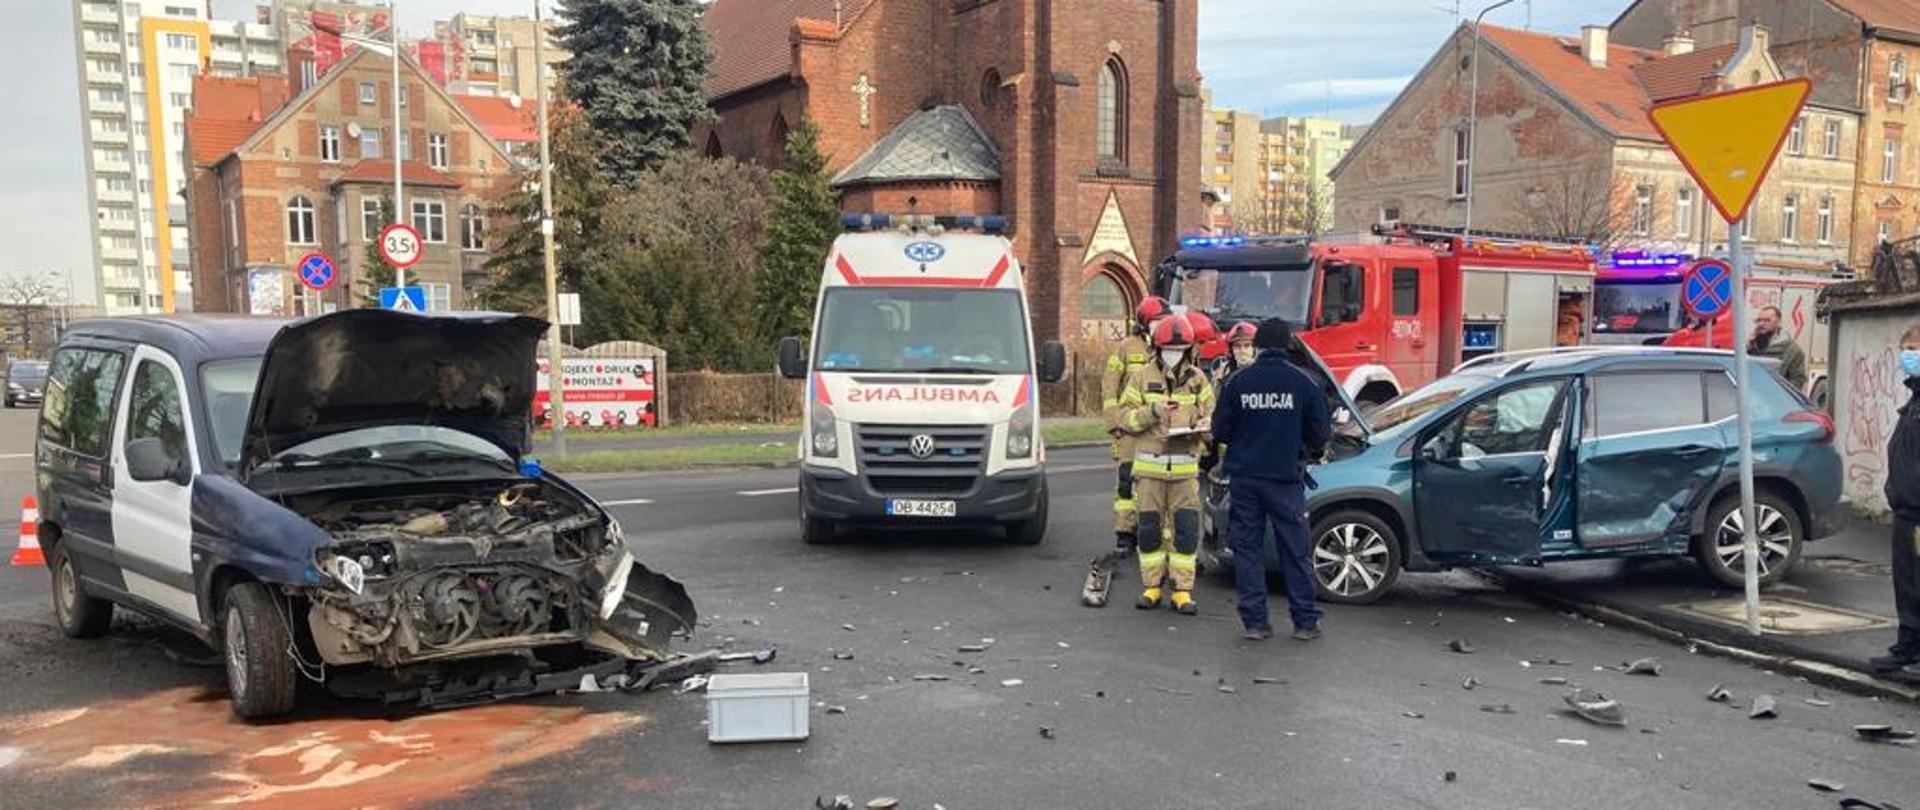 Wypadek z udziałem 2 samochodów osobowych na ul. Łokietka w dniu 21.01.21 r.